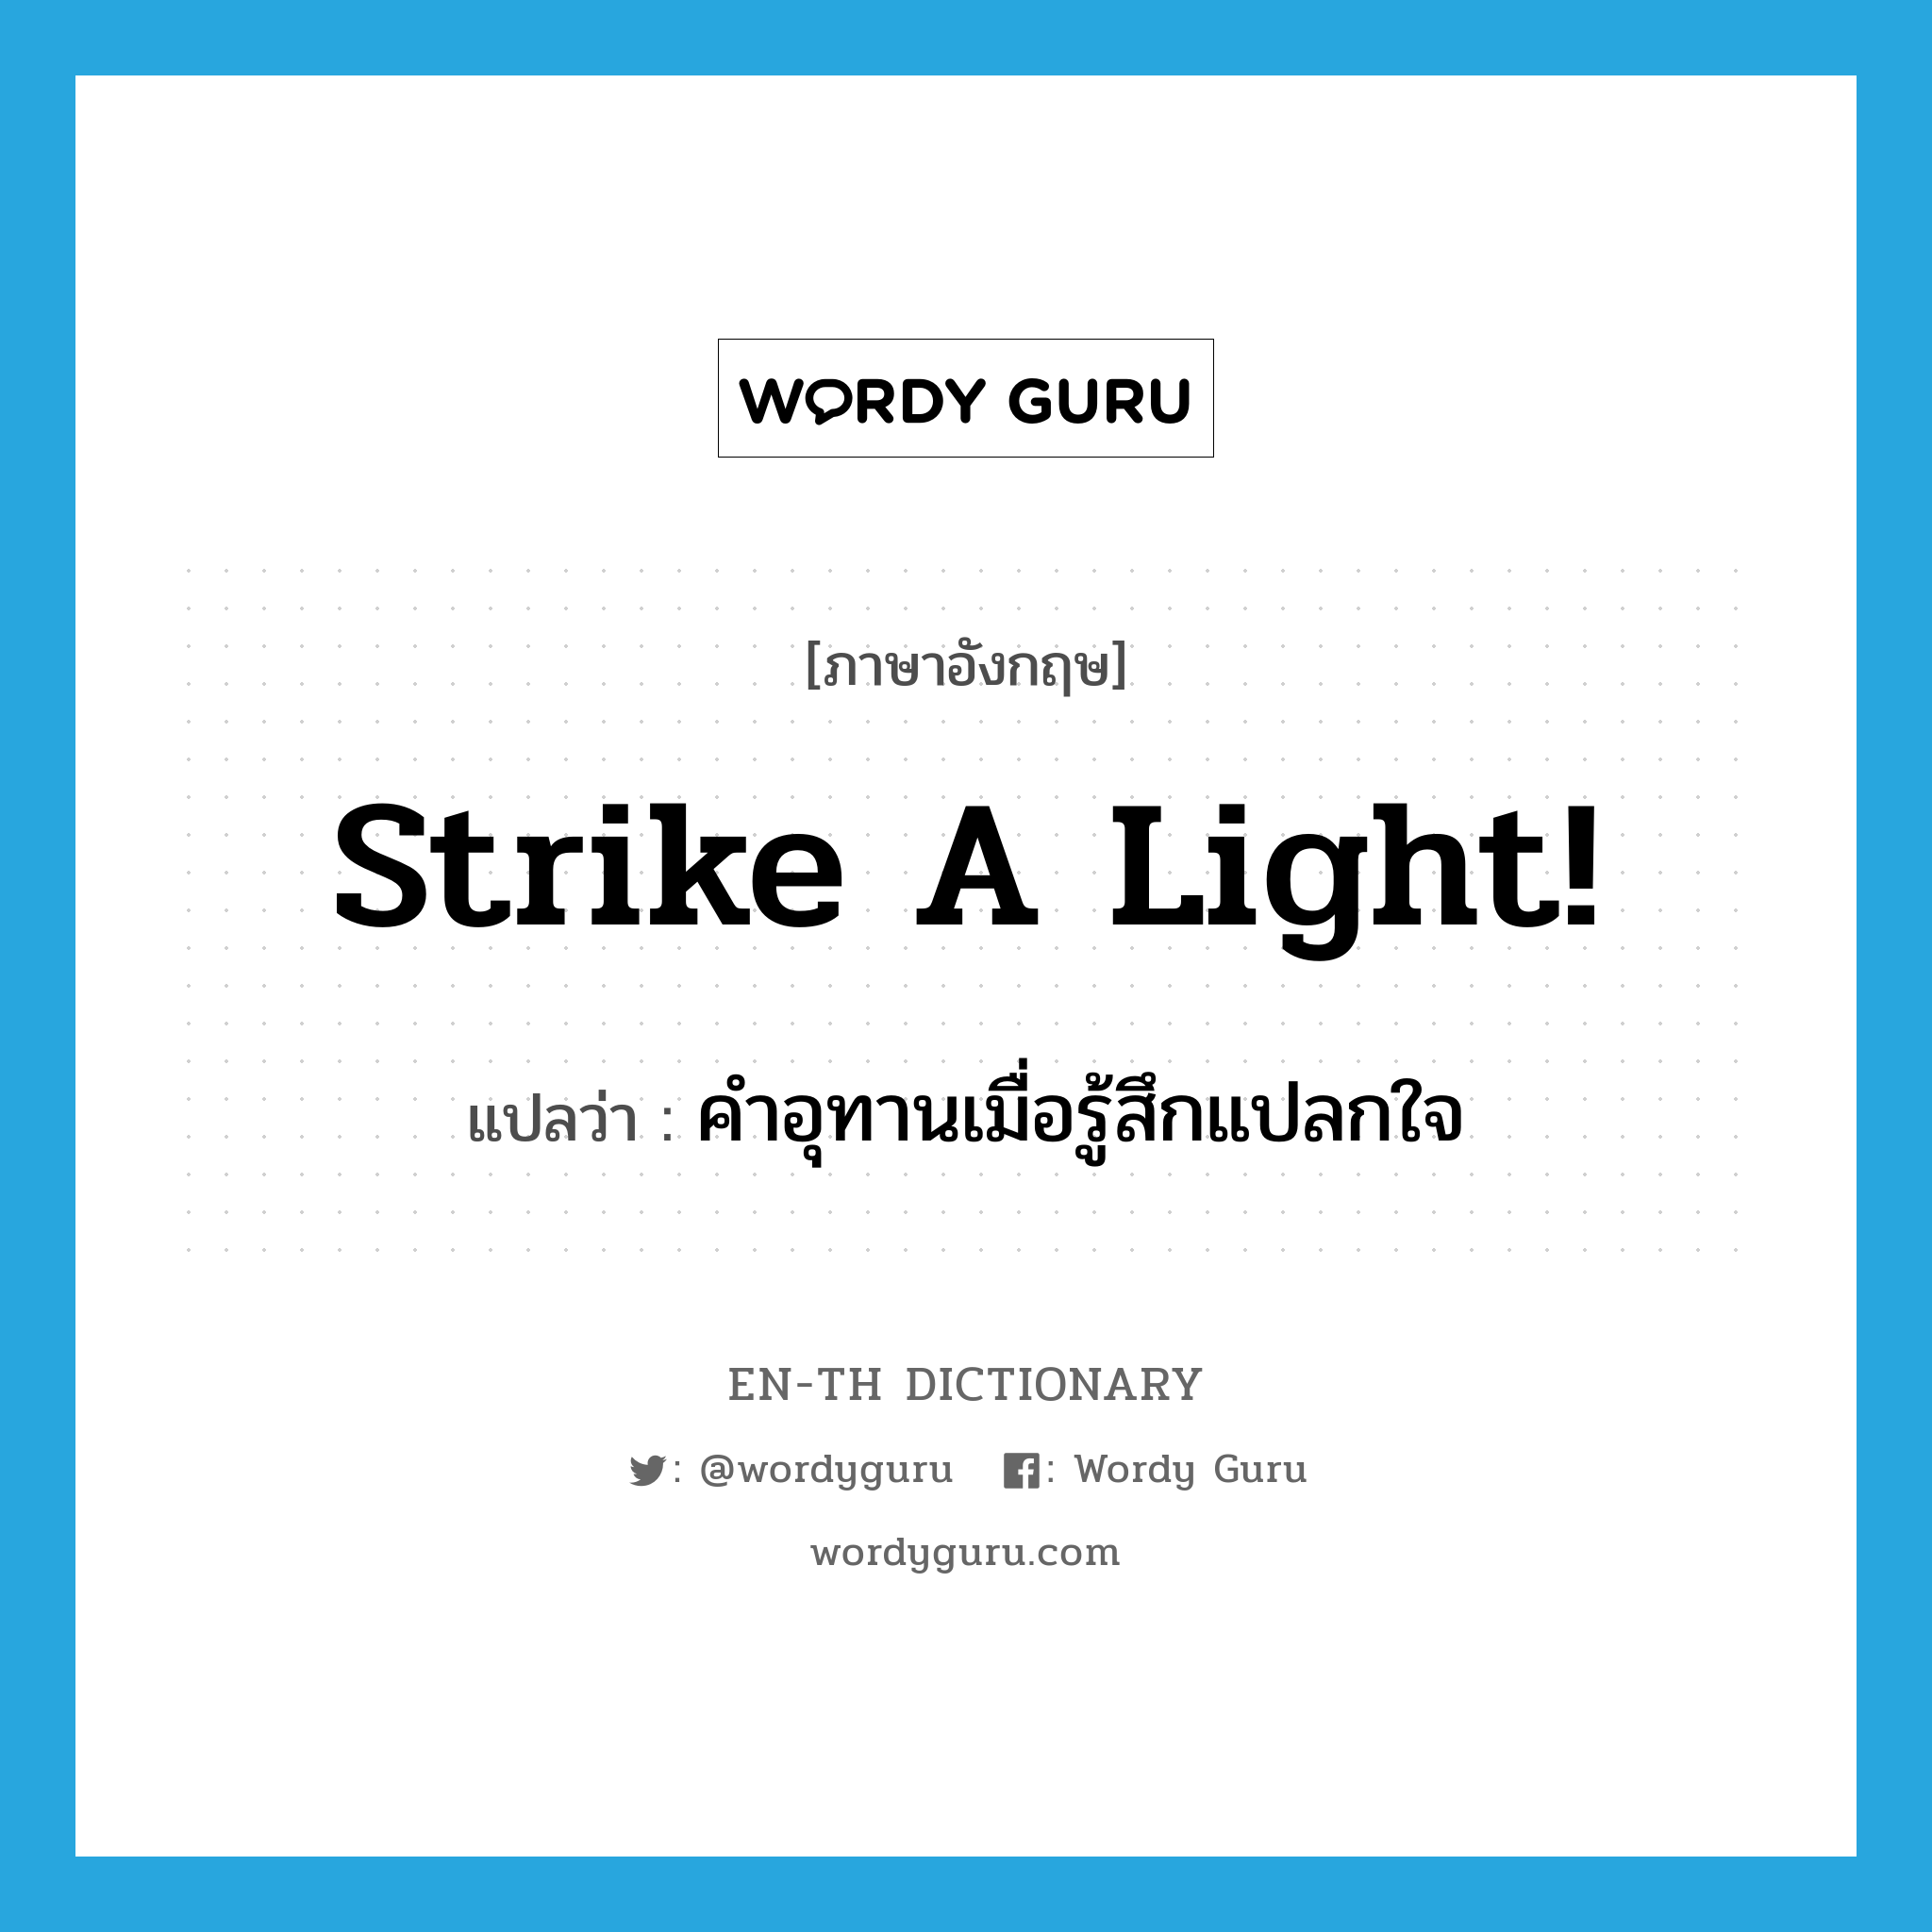 คำอุทานเมื่อรู้สึกแปลกใจ ภาษาอังกฤษ?, คำศัพท์ภาษาอังกฤษ คำอุทานเมื่อรู้สึกแปลกใจ แปลว่า strike a light! ประเภท SL หมวด SL